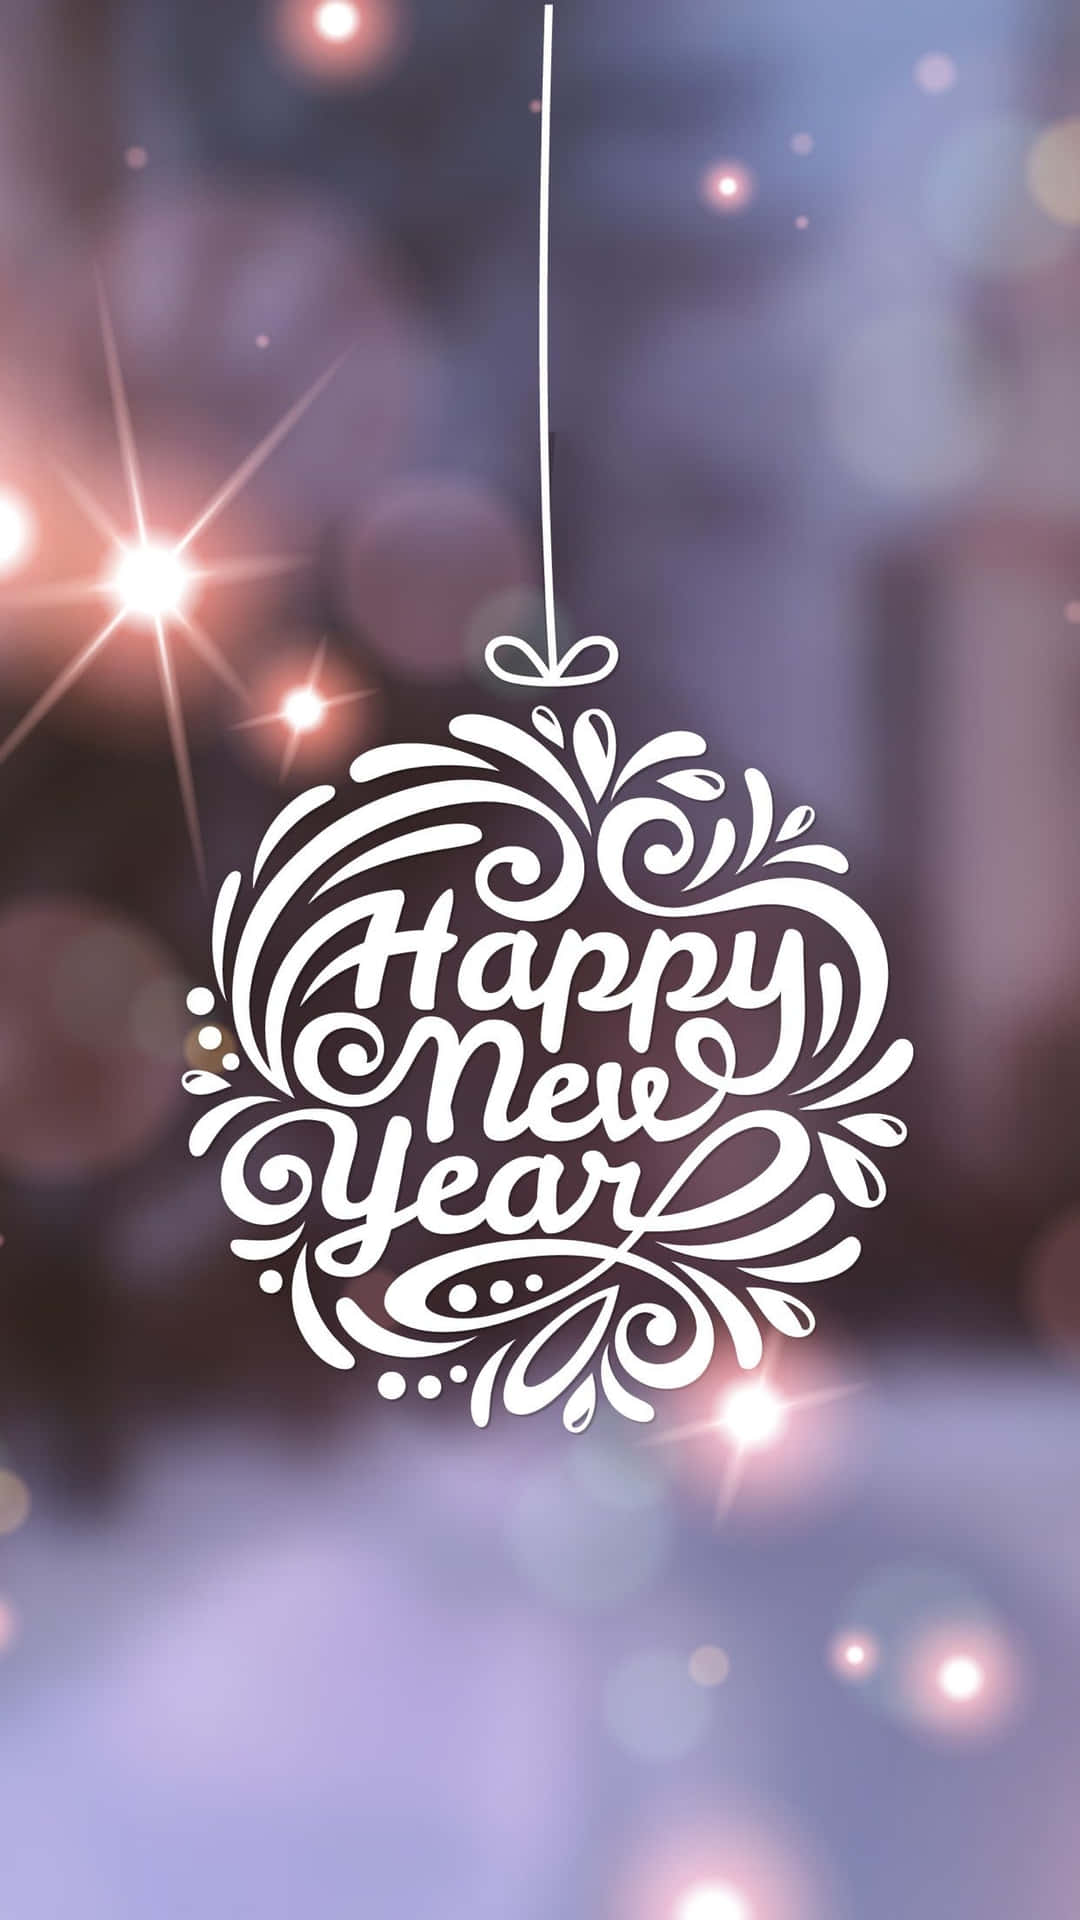 Feiernsie Das Neue Jahr Mit Dem Neuesten Iphone! Wallpaper